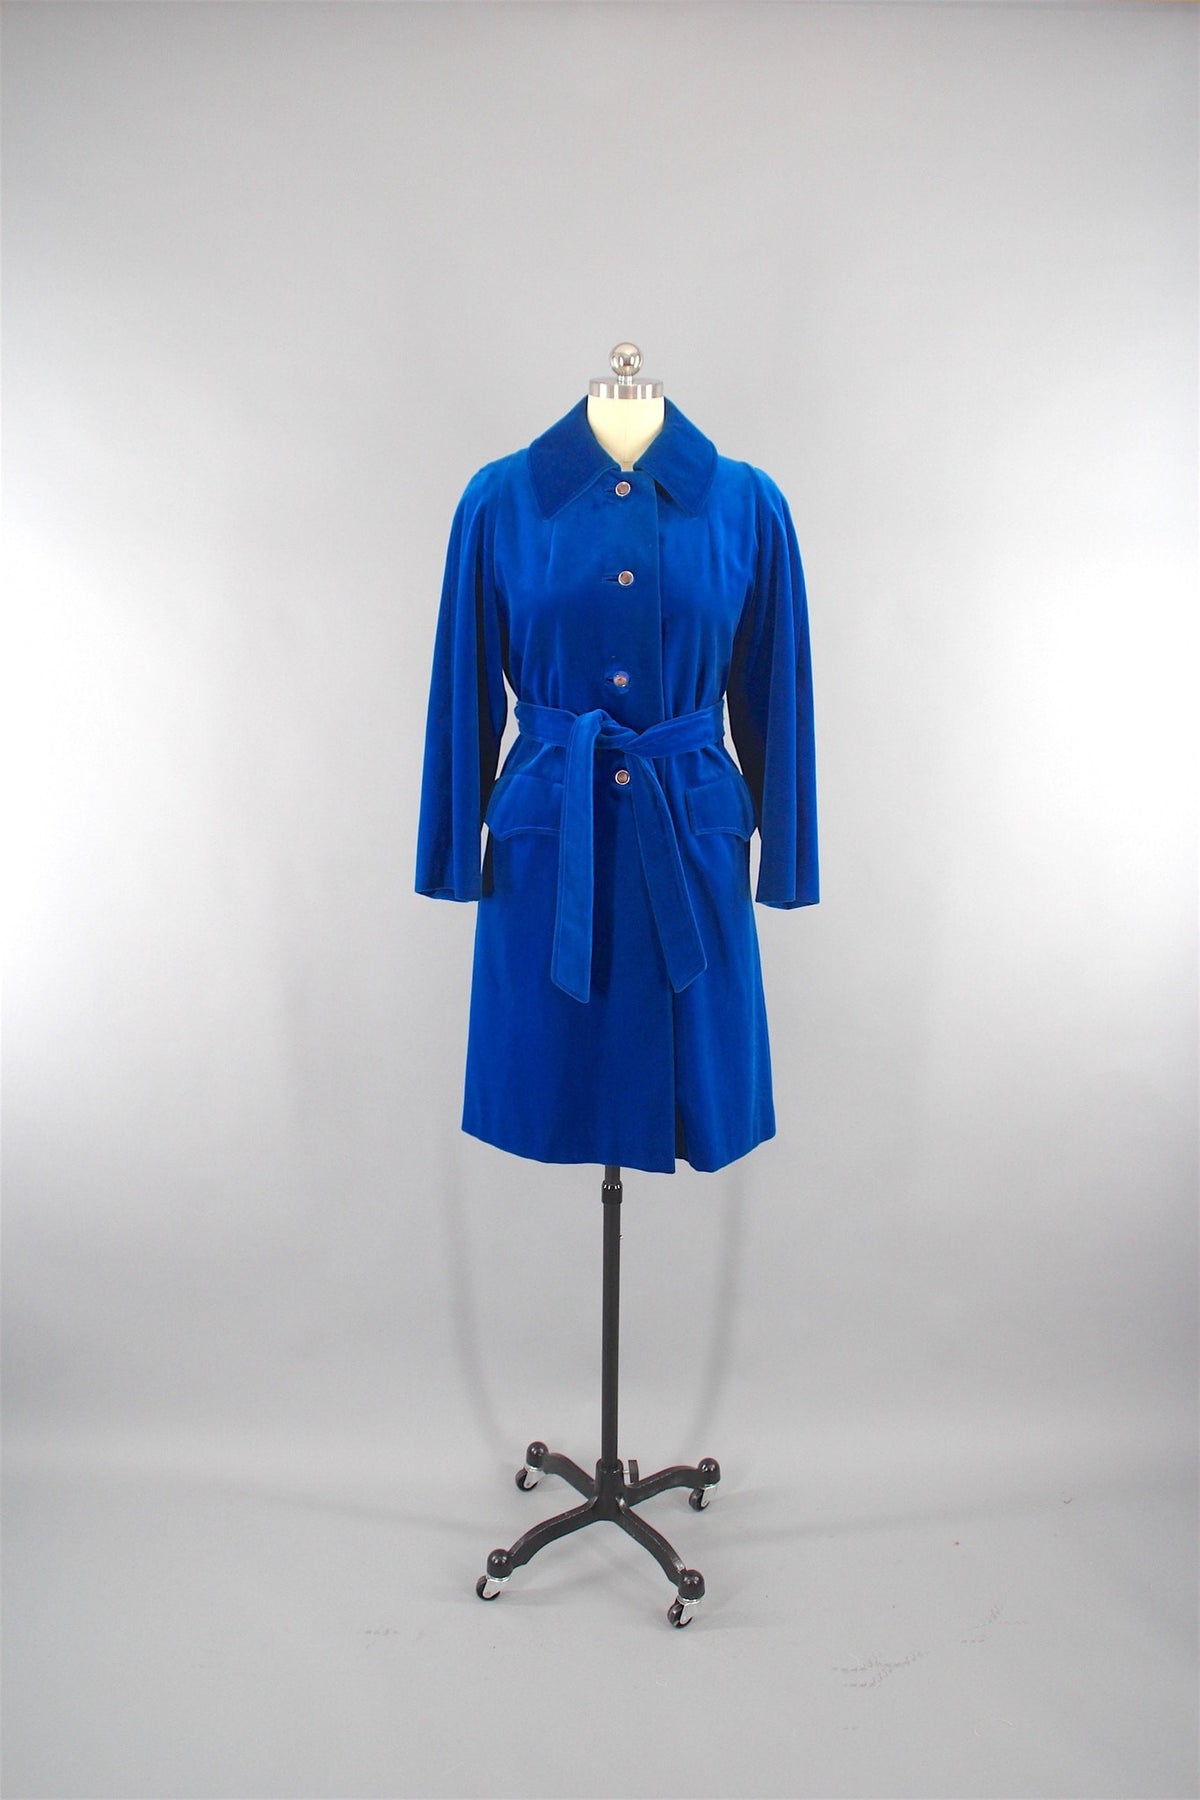 Vintage 1960s Electric Blue Velvet Coat by Surrey Classics Coat ...